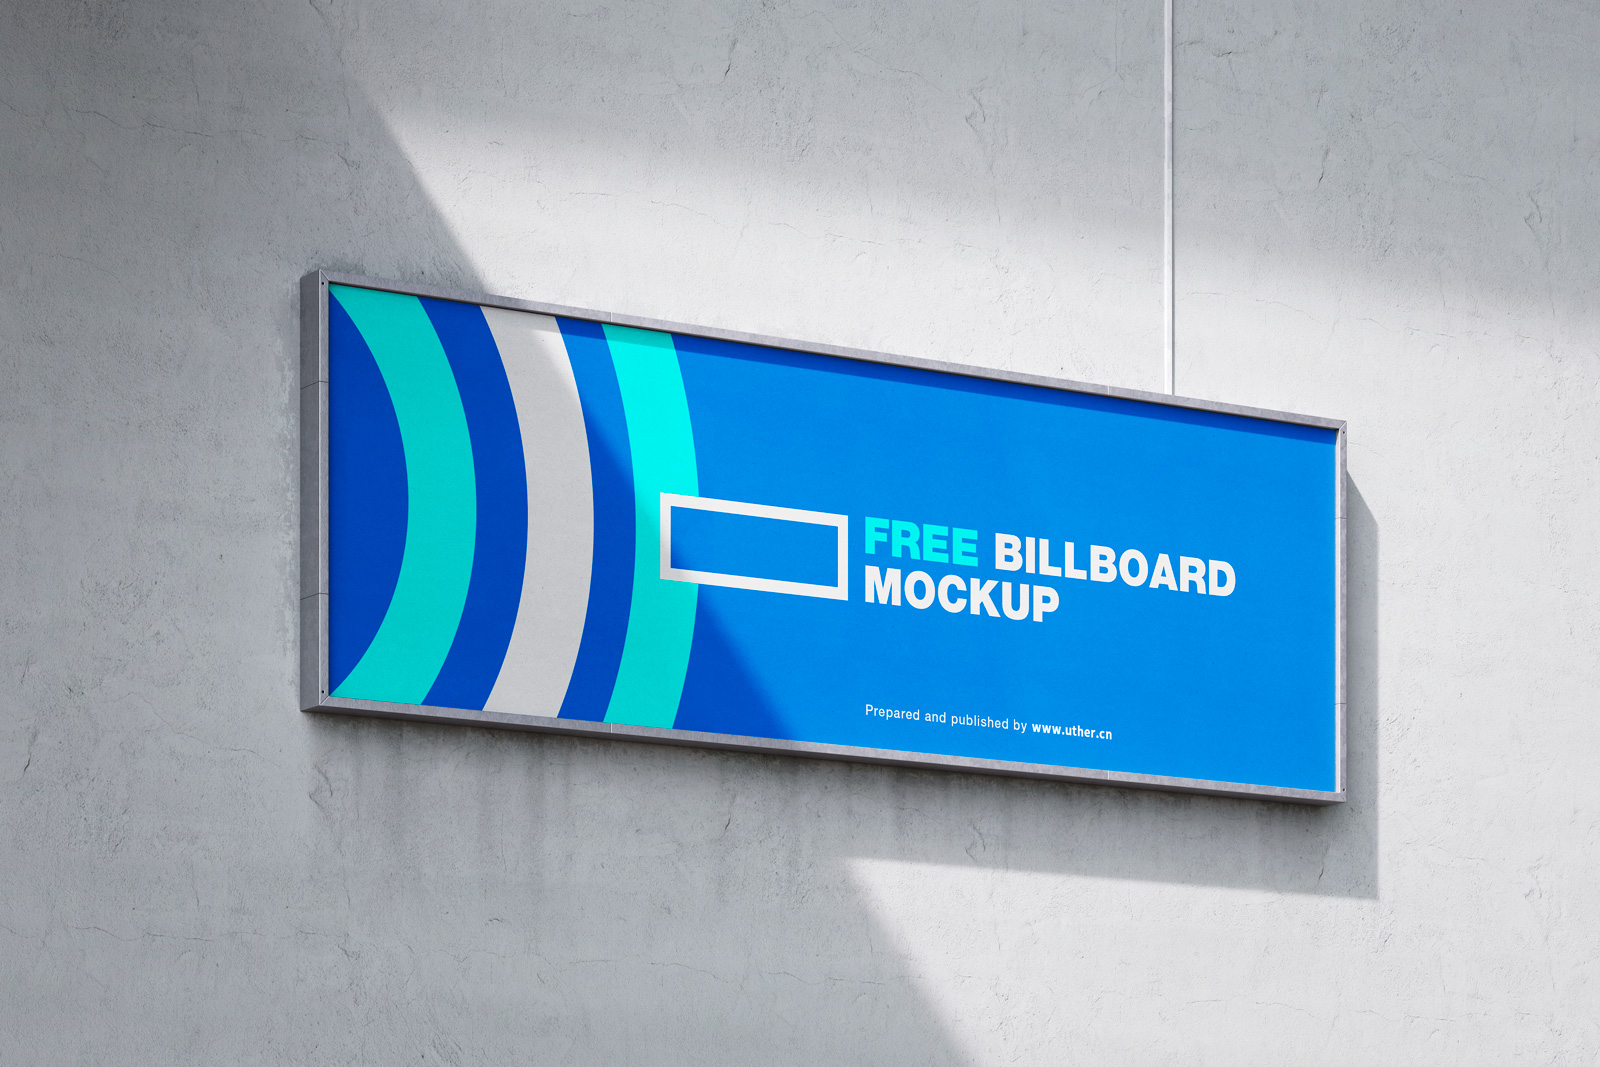 高质量侧面大型户外广告牌海报样机模型Billboard Mockup .psd素材